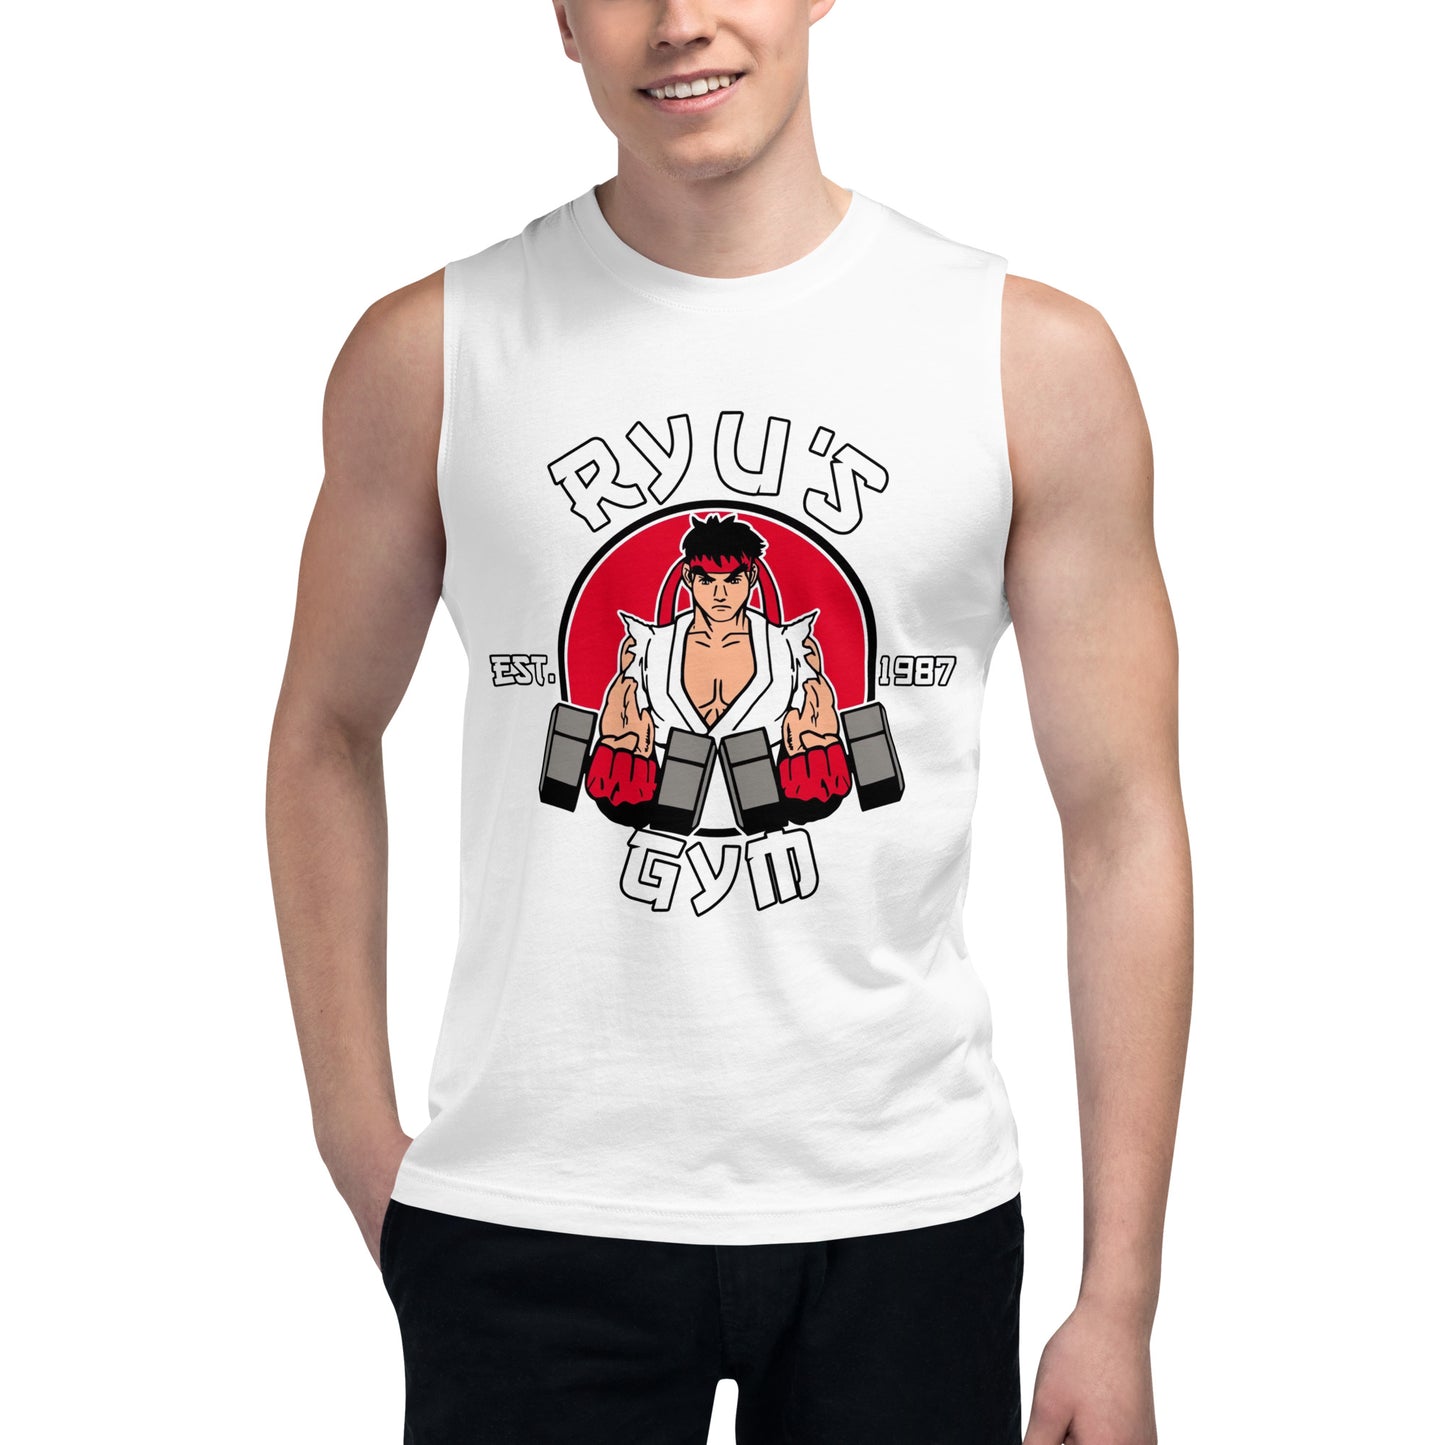 Camiseta sin Mangas Ryu's Gym, Nuestras Camisetas son unisex disponibles en la mejor tienda online, compra ahora en Superstar!